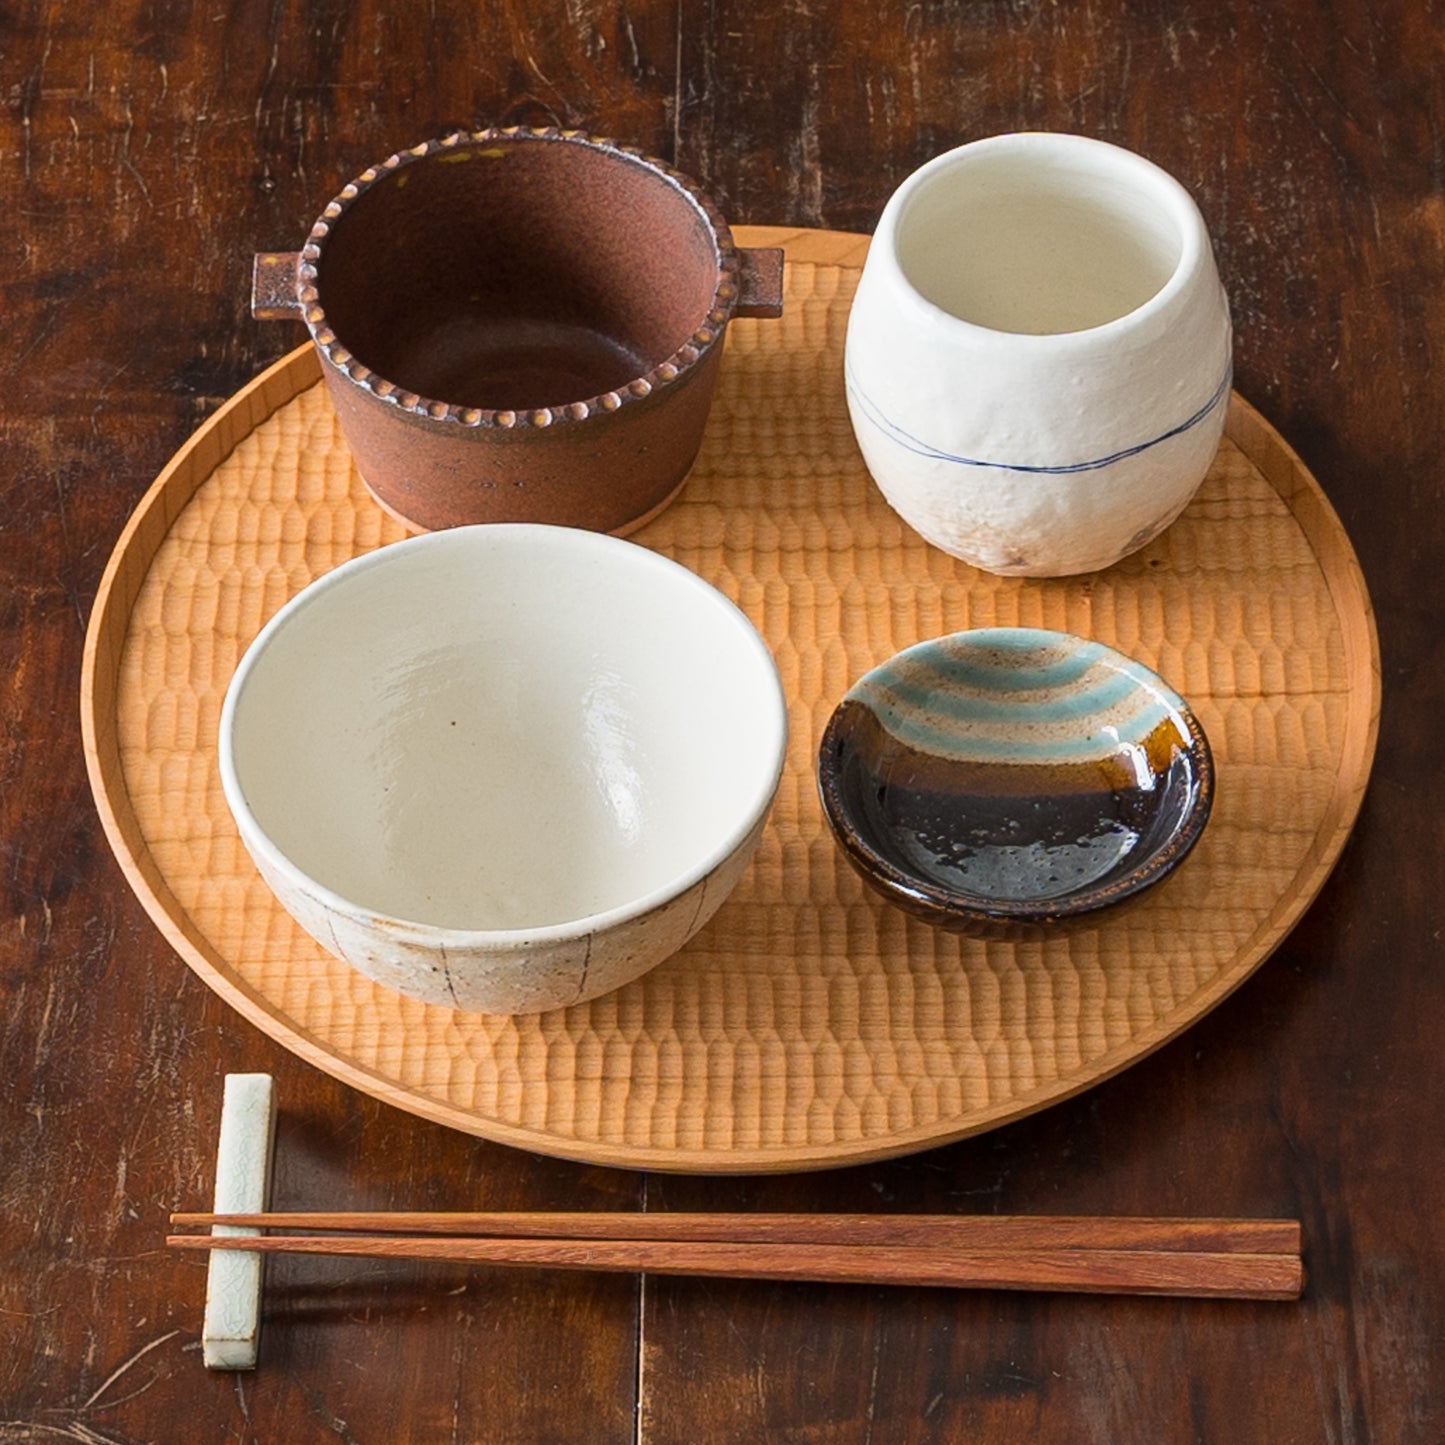 食卓を素敵に彩ってくれる古谷製陶所のゴス線エッグカップとめし碗